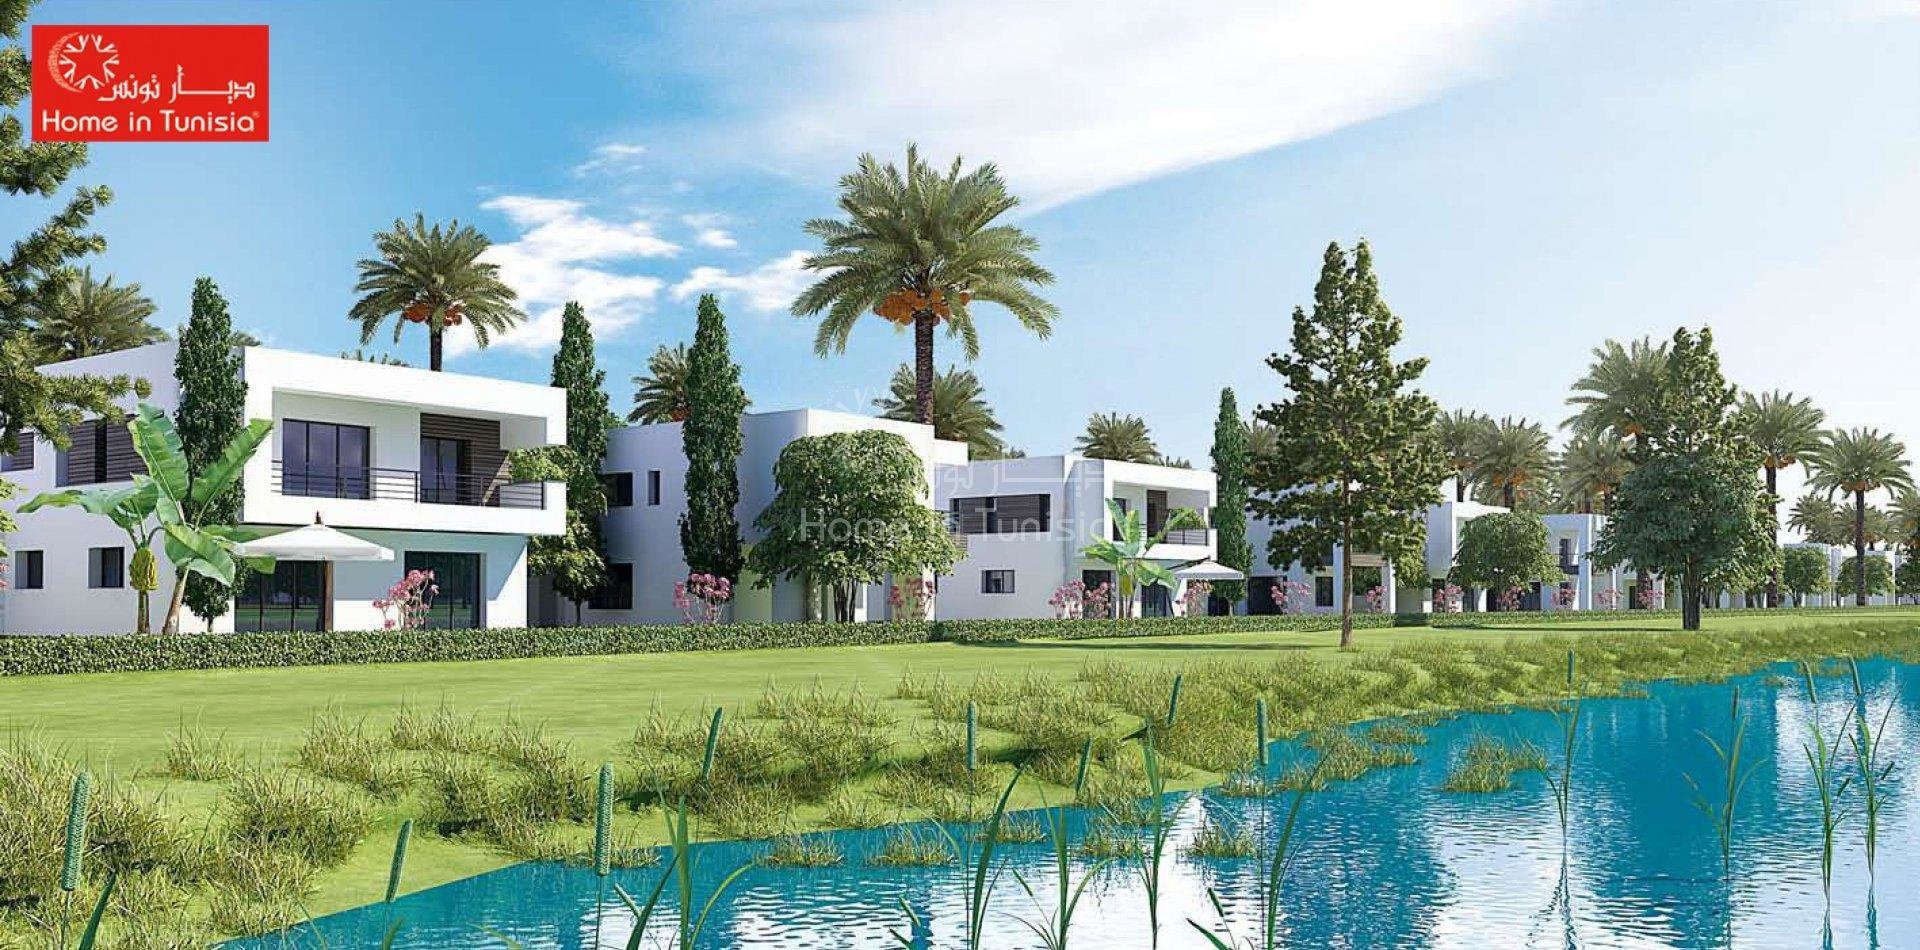 Villa golf isolée neuve de 426 m2 avec 4 chambres terrasse jardin piscine